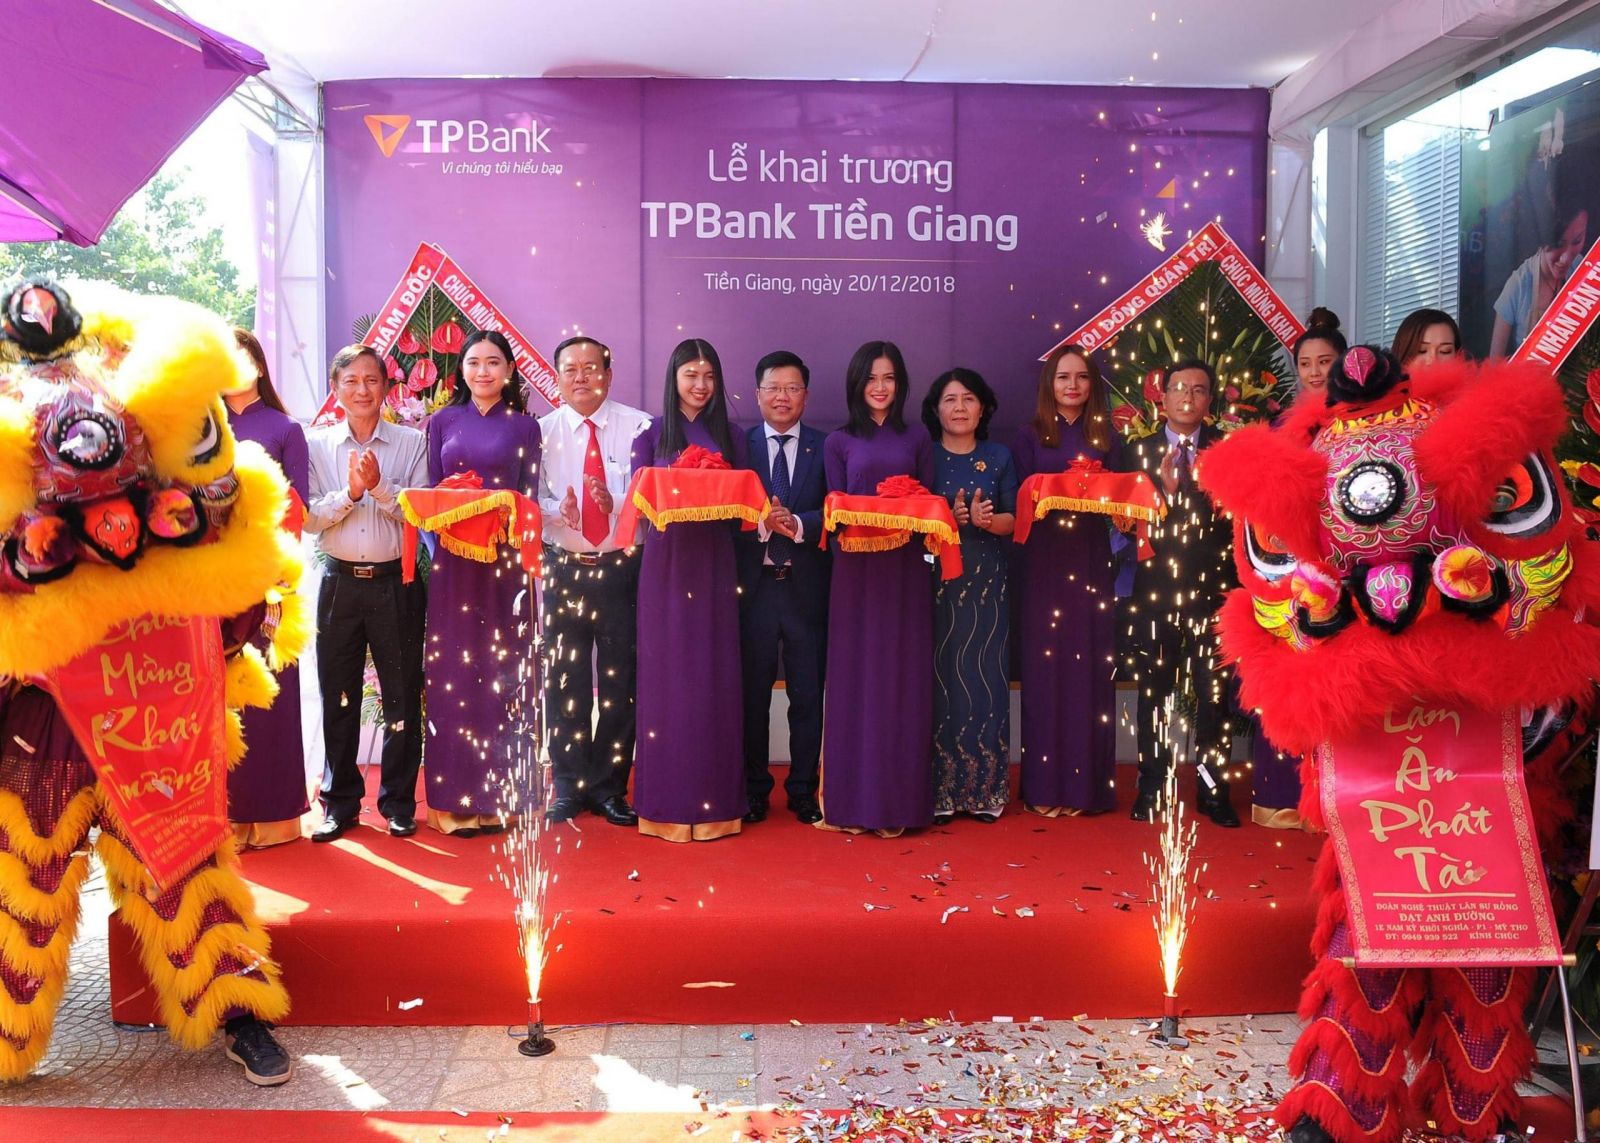 TPBank Tiền Giang đã chính thức khai trương và đi vào hoạt động từ ngày 20/12/2018.